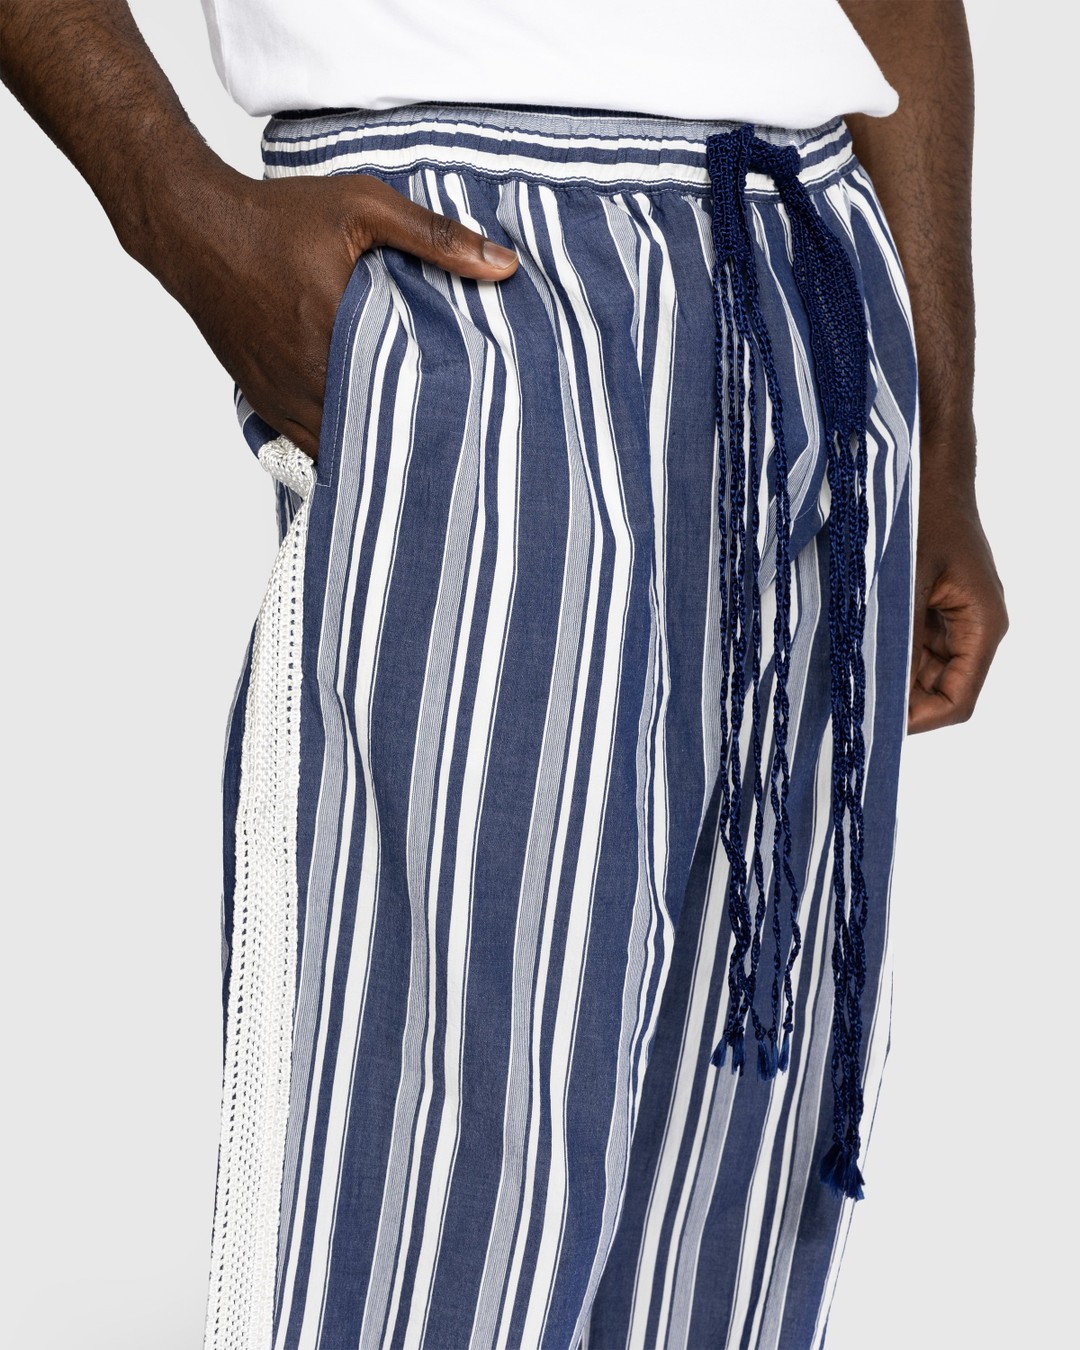 Wales Bonner – Soul Pyjama Trousers - Loungewear - Blue - Image 4